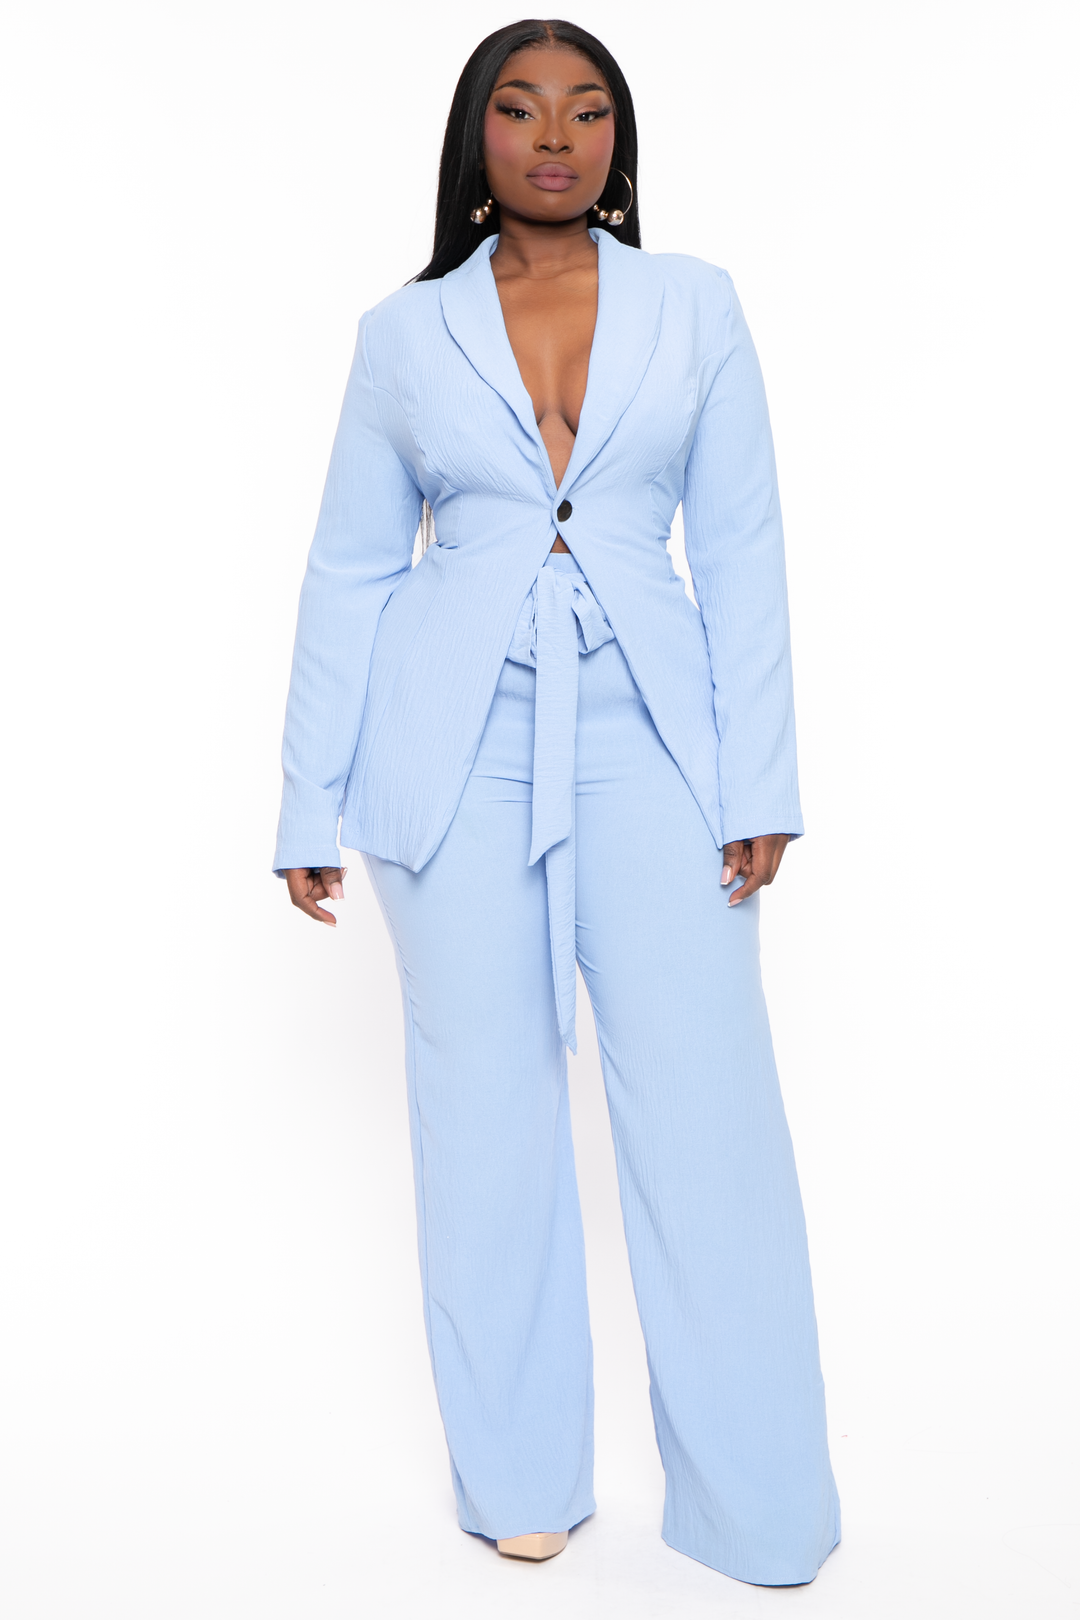 Plus Size HBIC Pant Suit - Baby Blue – Curvy Sense